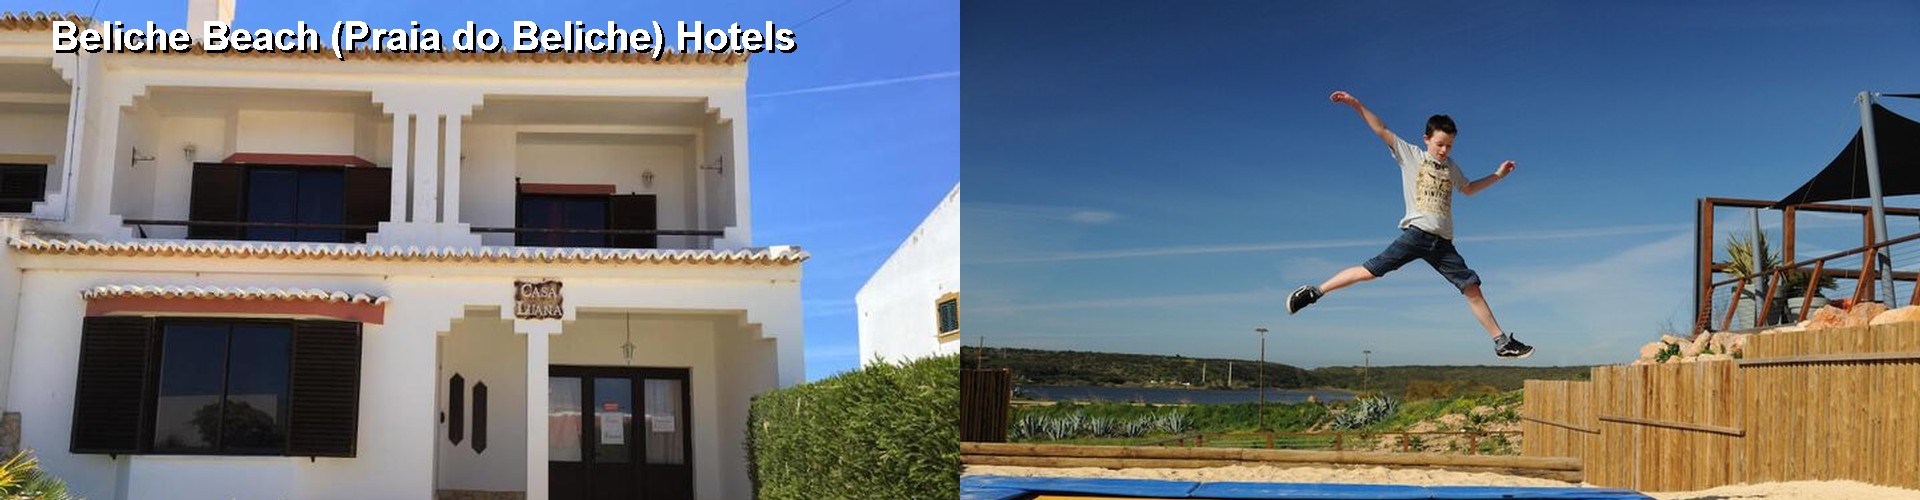 5 Best Hotels near Beliche Beach (Praia do Beliche)